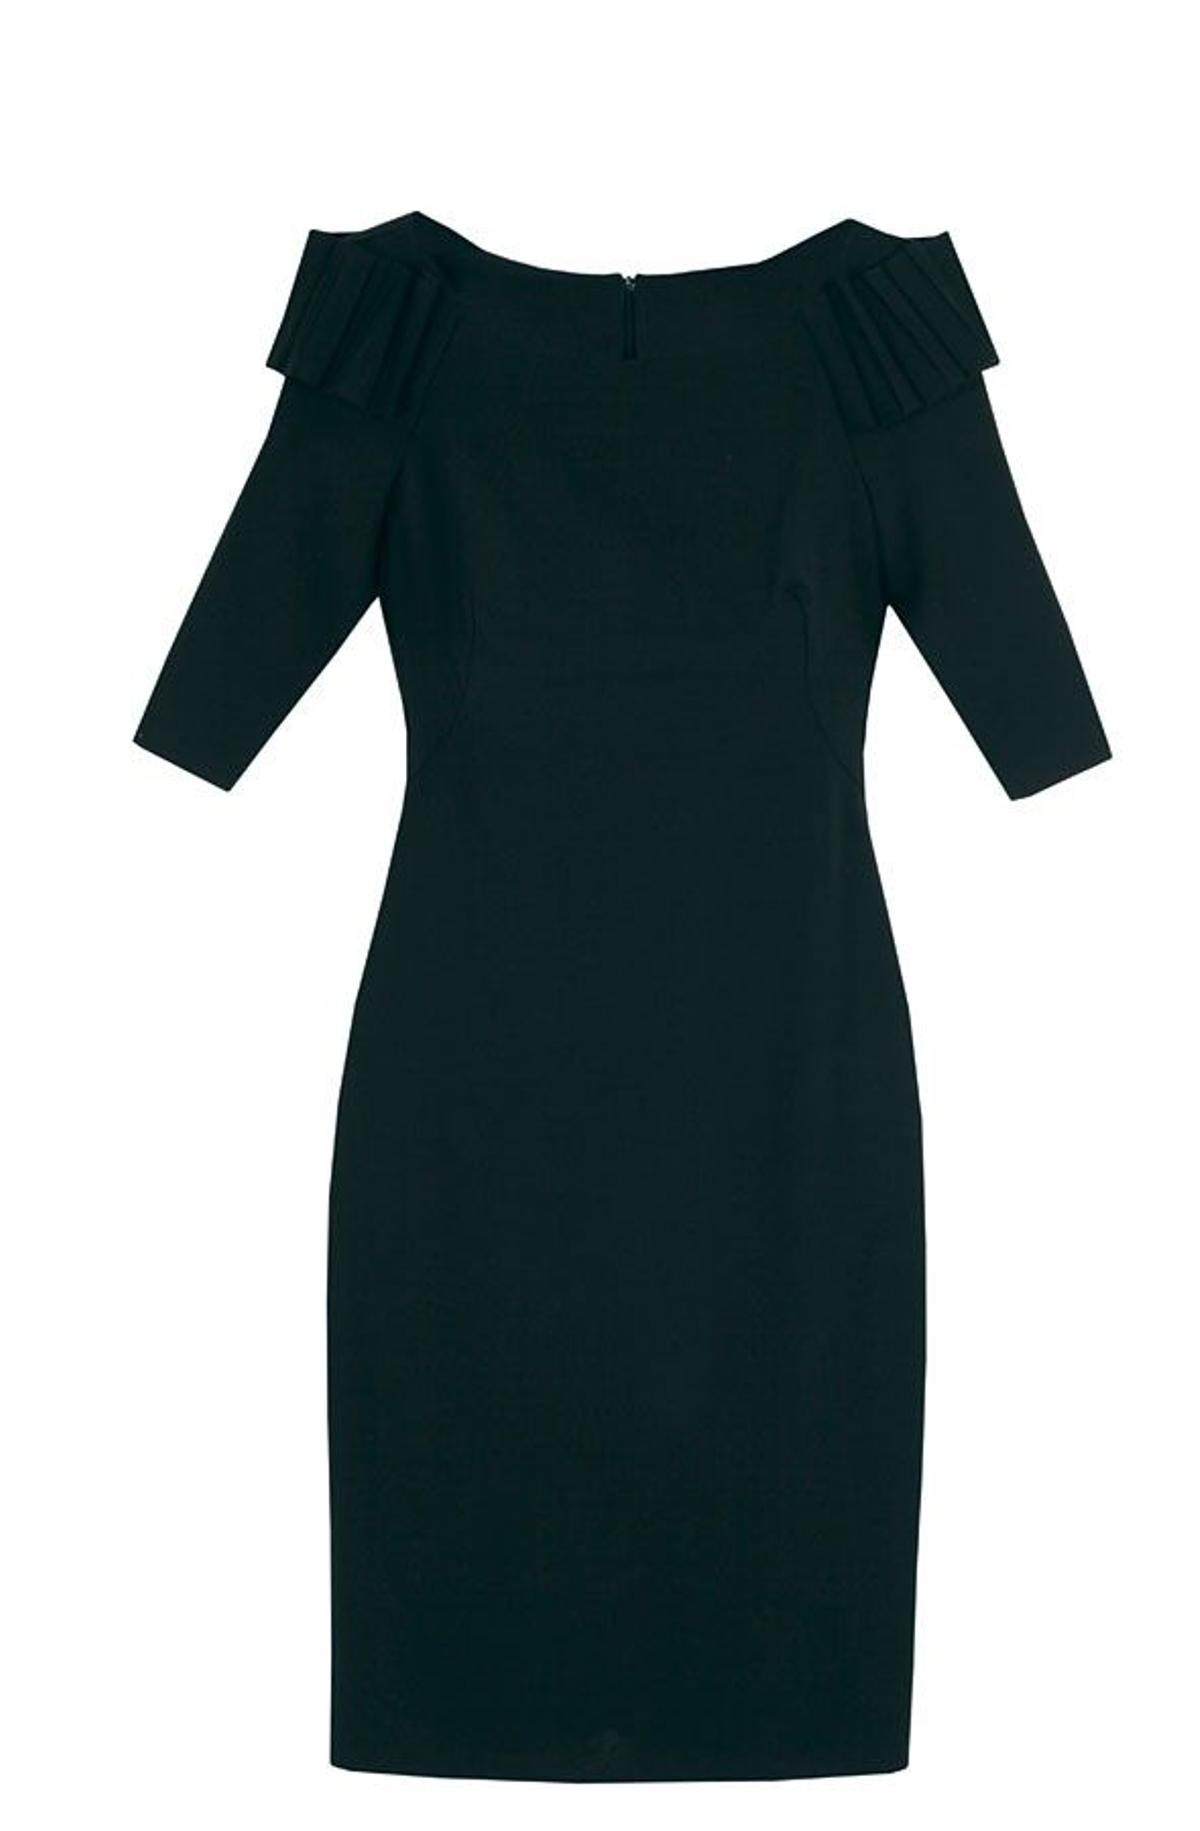 Little black dress: Dolores Promesas